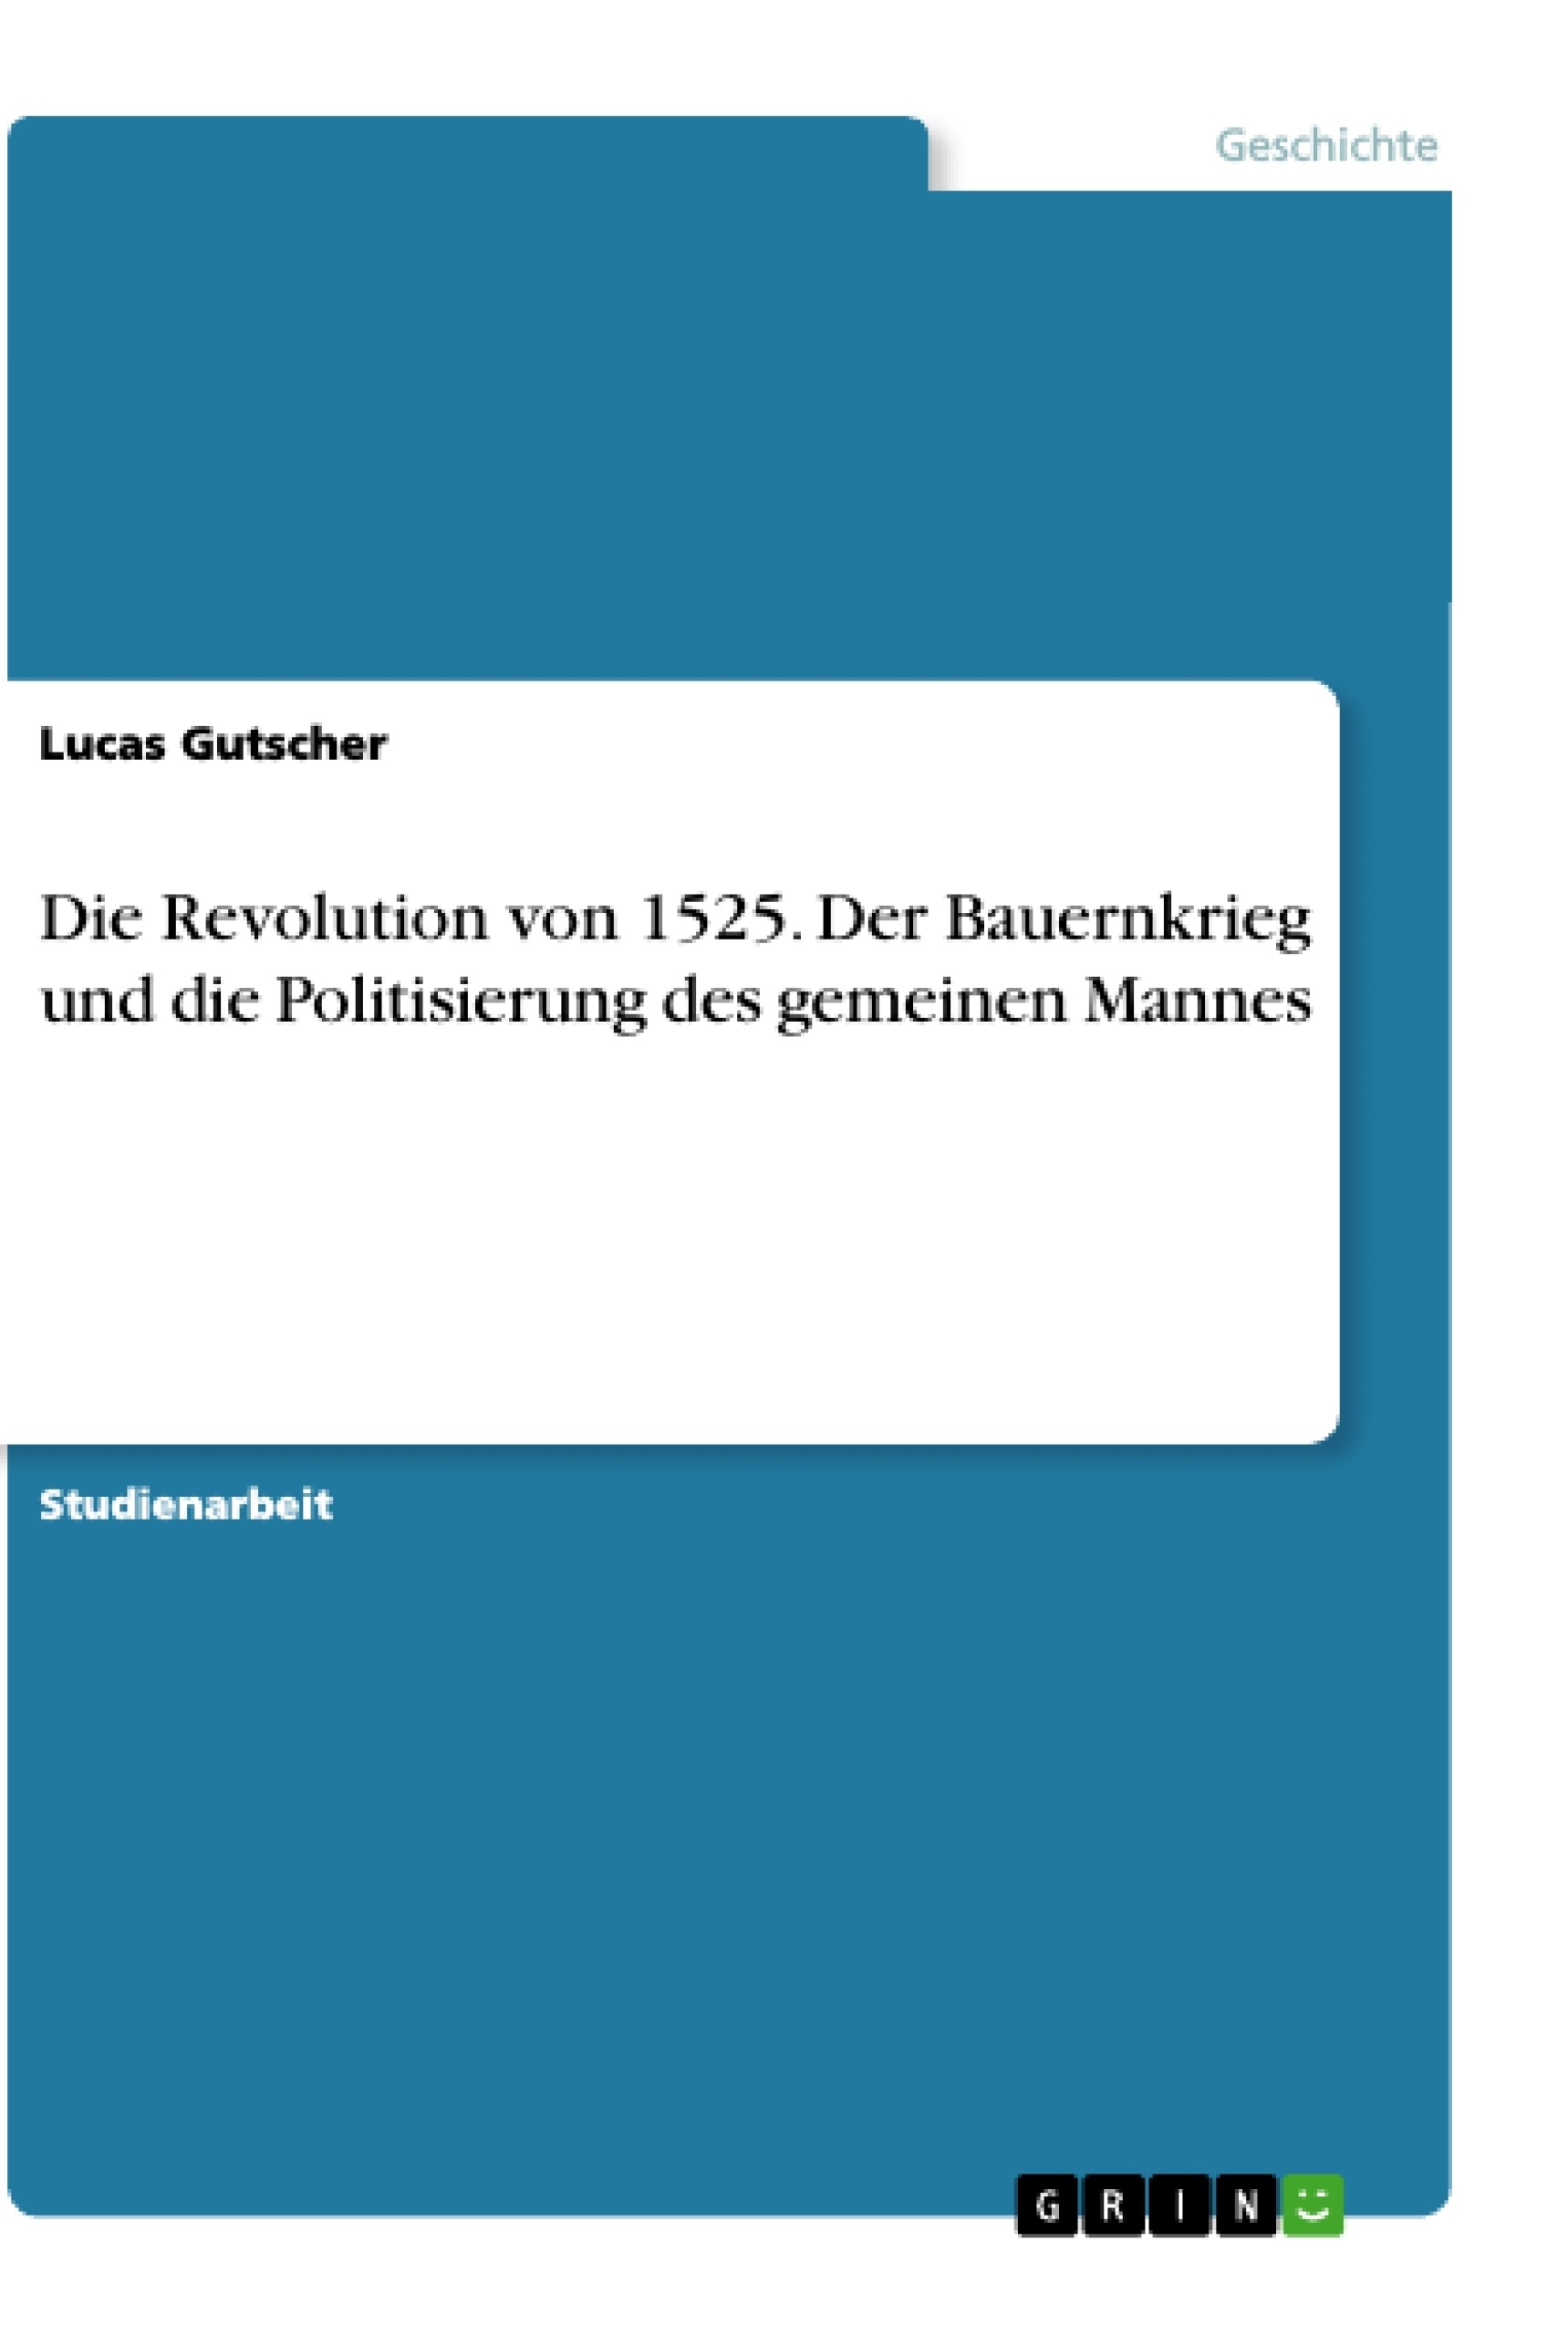 Title: Die Revolution von 1525. Der Bauernkrieg und die Politisierung des gemeinen Mannes